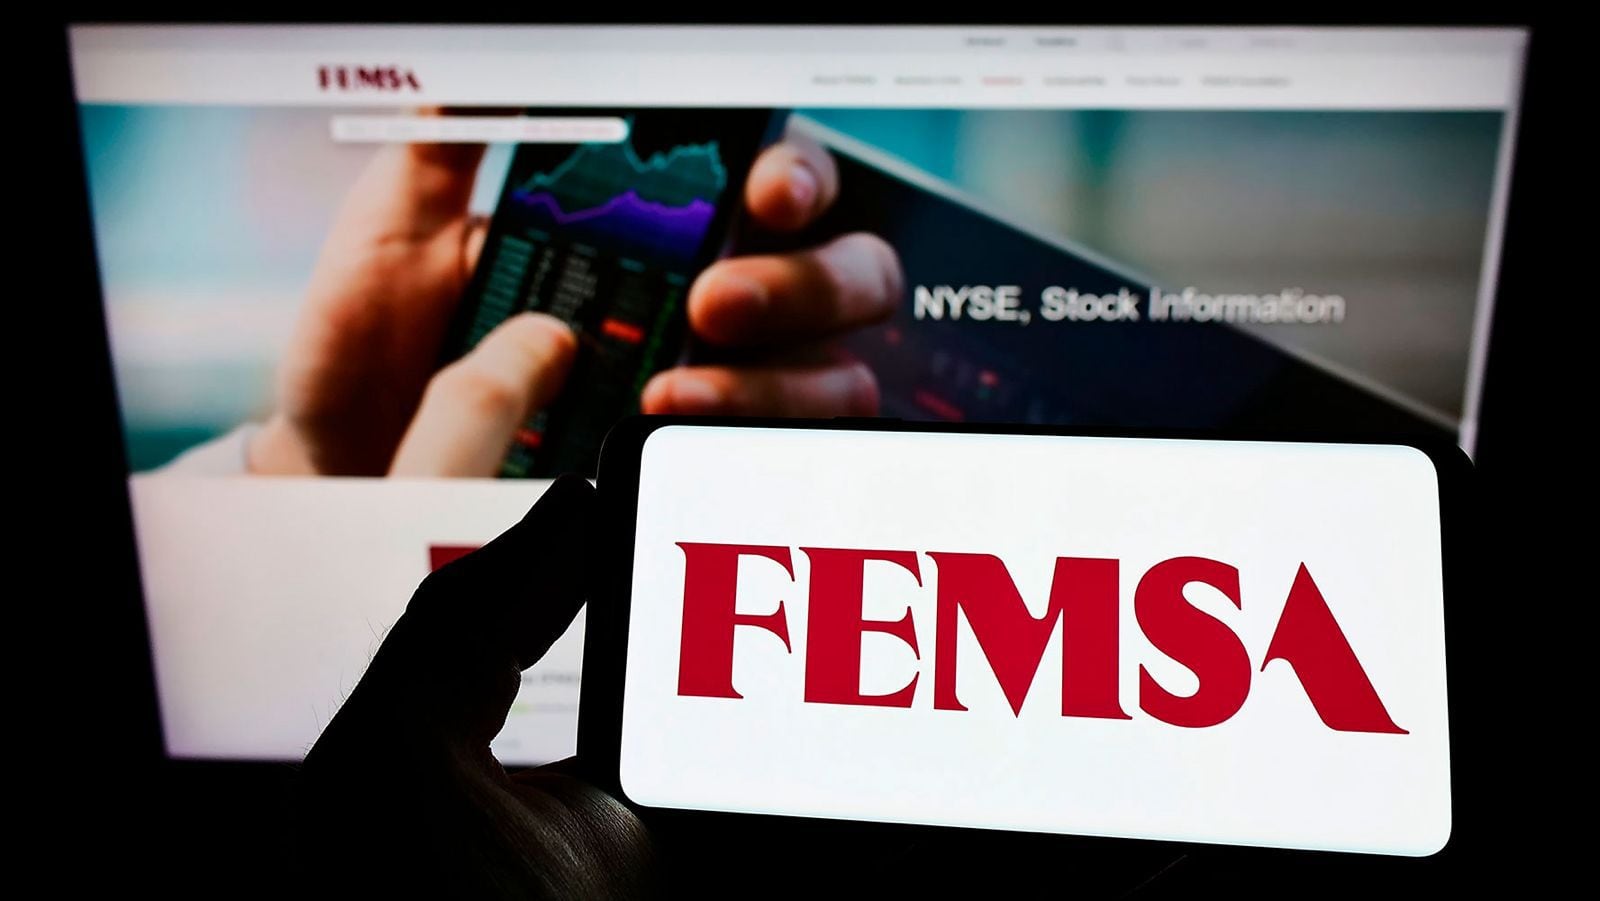 FEMSA vende Imbera y Torrey, sus negocios de refrigeración y alimentos, por 8 mil mdp